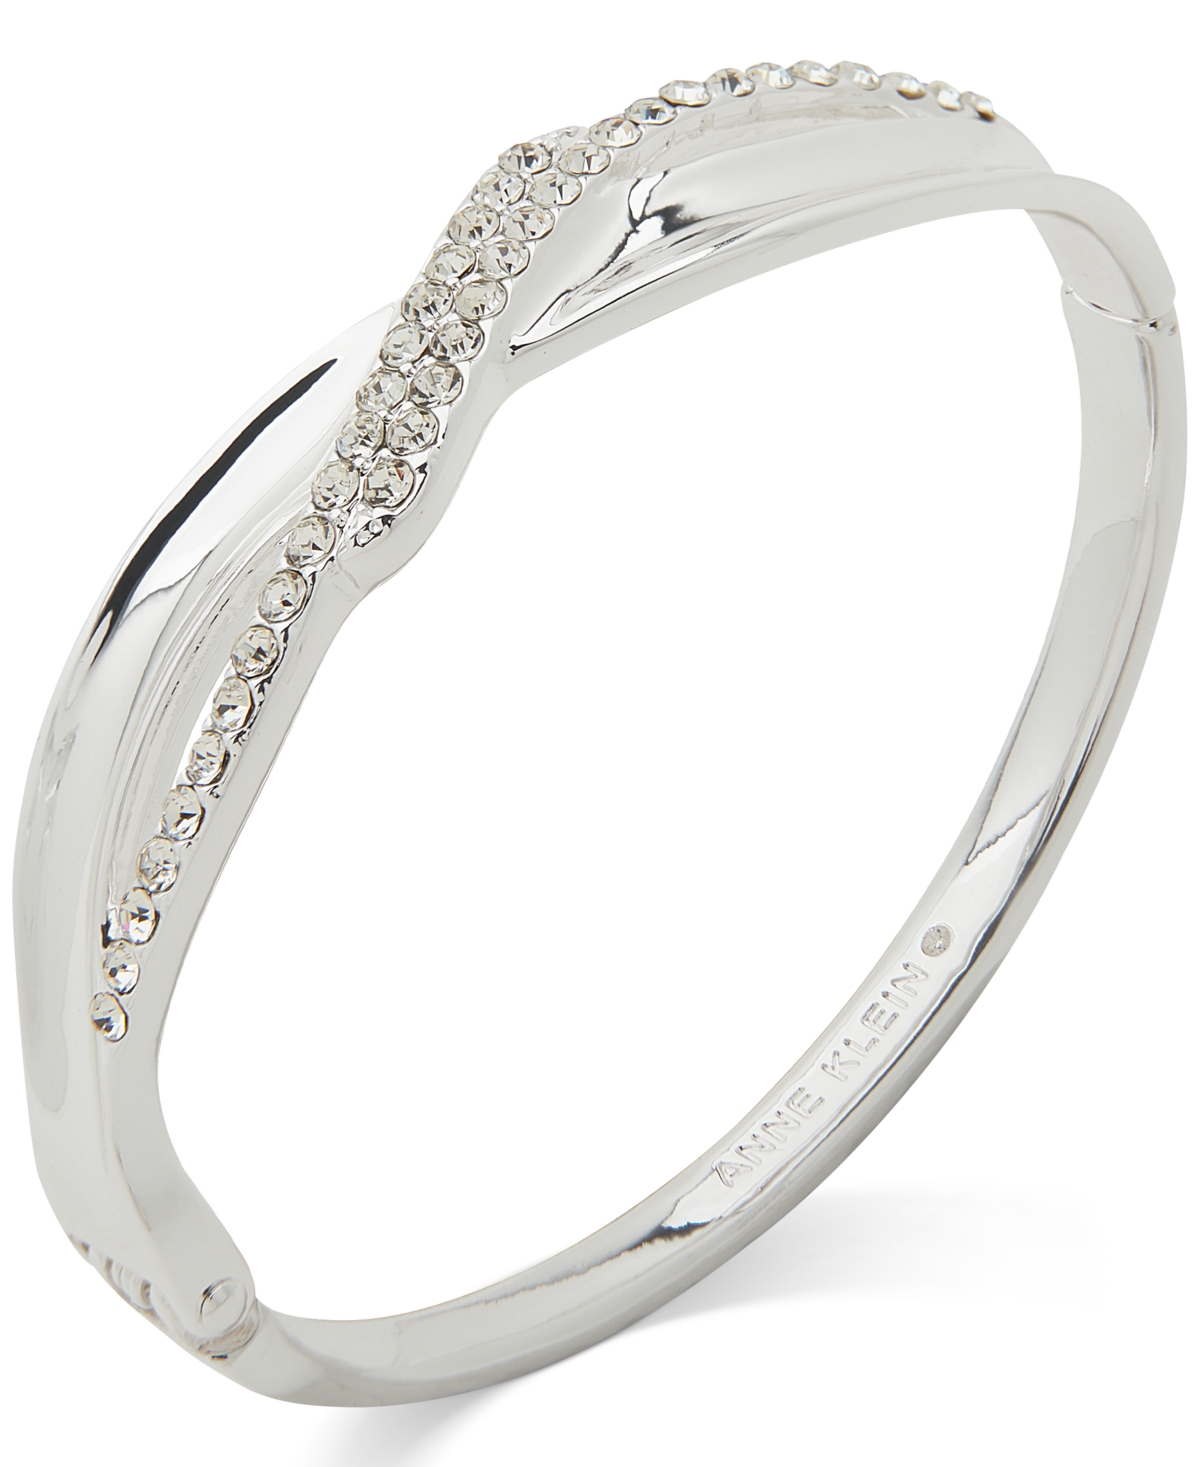 Silver-Tone Crystal Infinity Motif Hinge Bracelet - Crystal